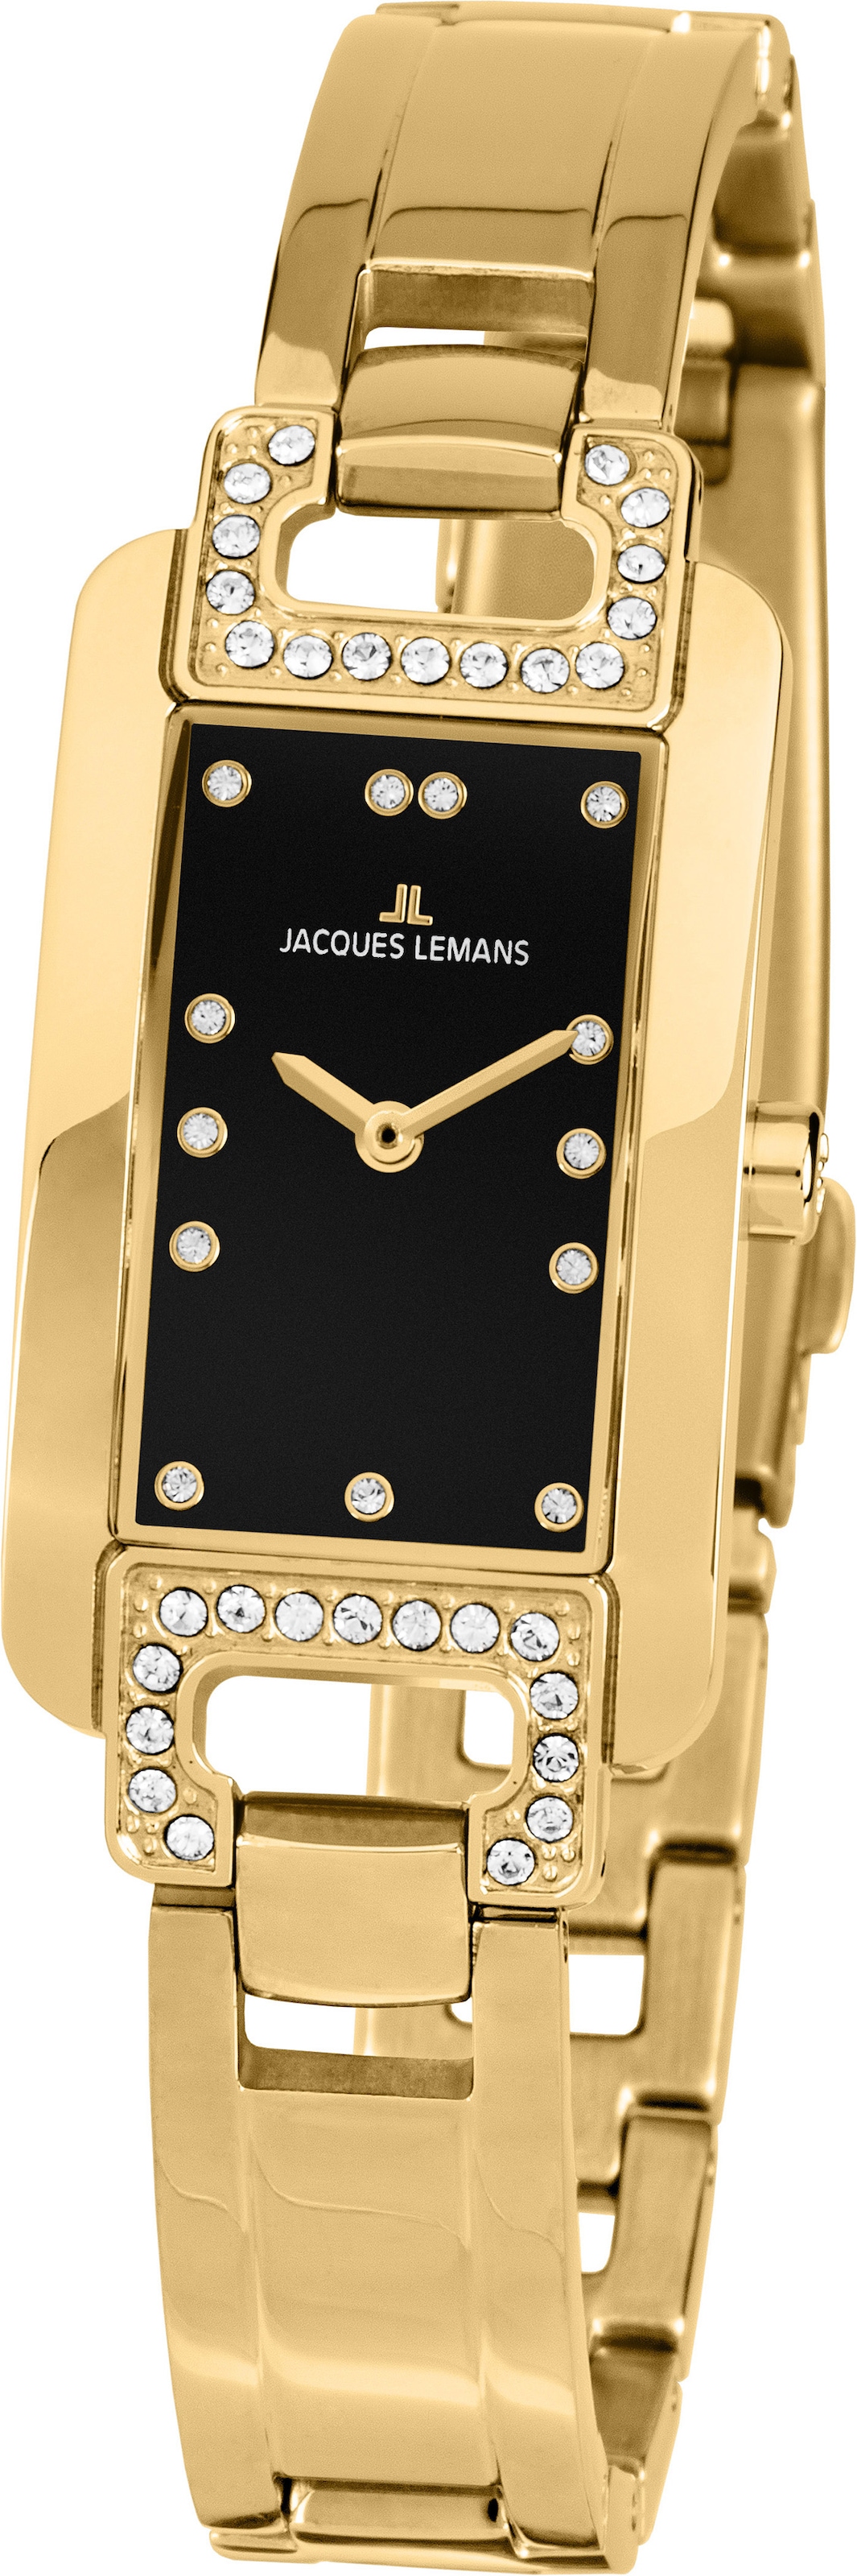 Jacques Lemans Quarzuhr »Barcelona, 1-2083E«, Armbanduhr, Damenuhr, gehärtetes Crystexglas